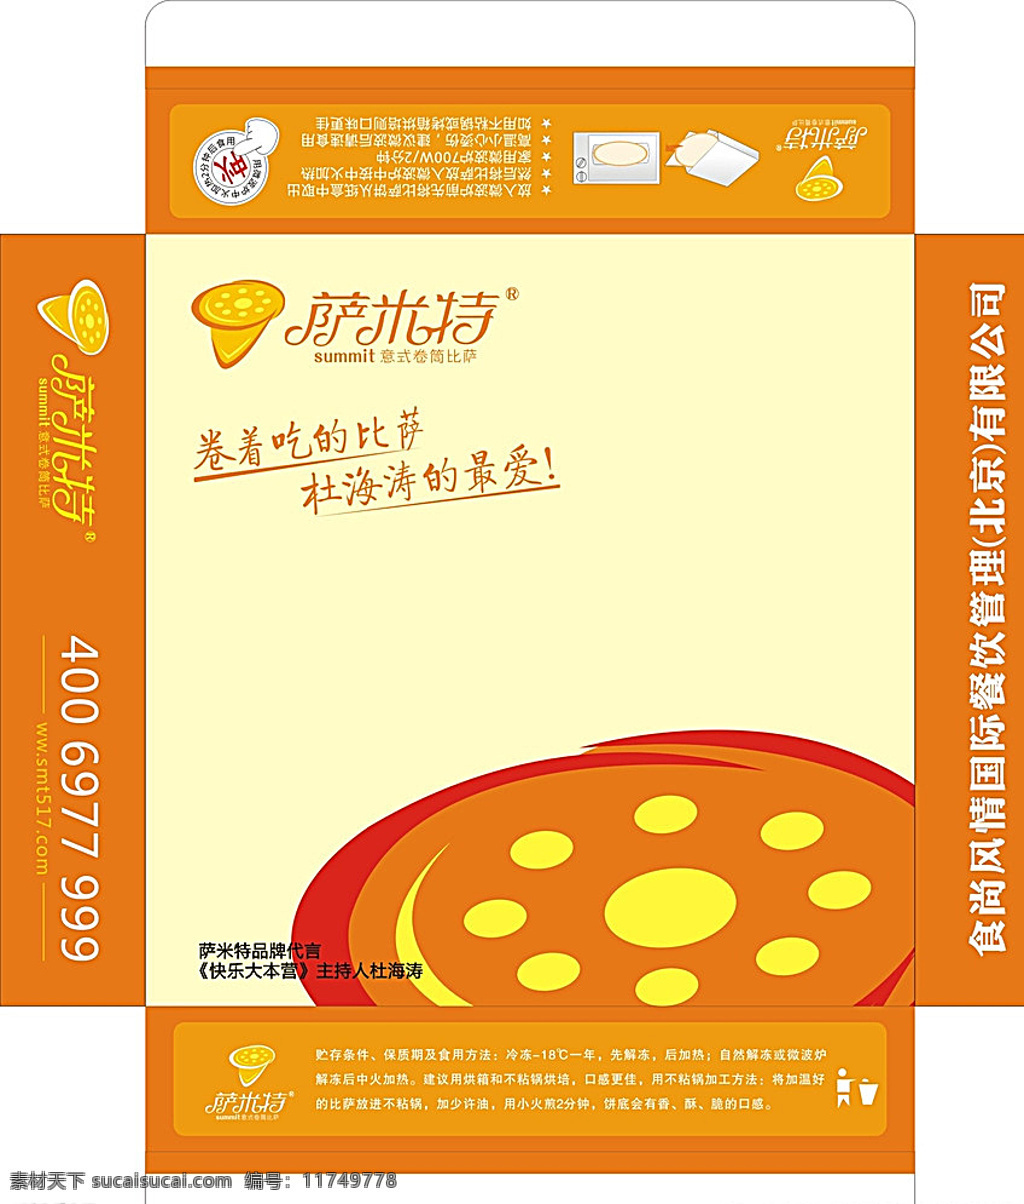 比萨盒子 郑州 一品堂设计 比萨外包盒子 盒子萨米特 比萨 盒子 包装设计 白色